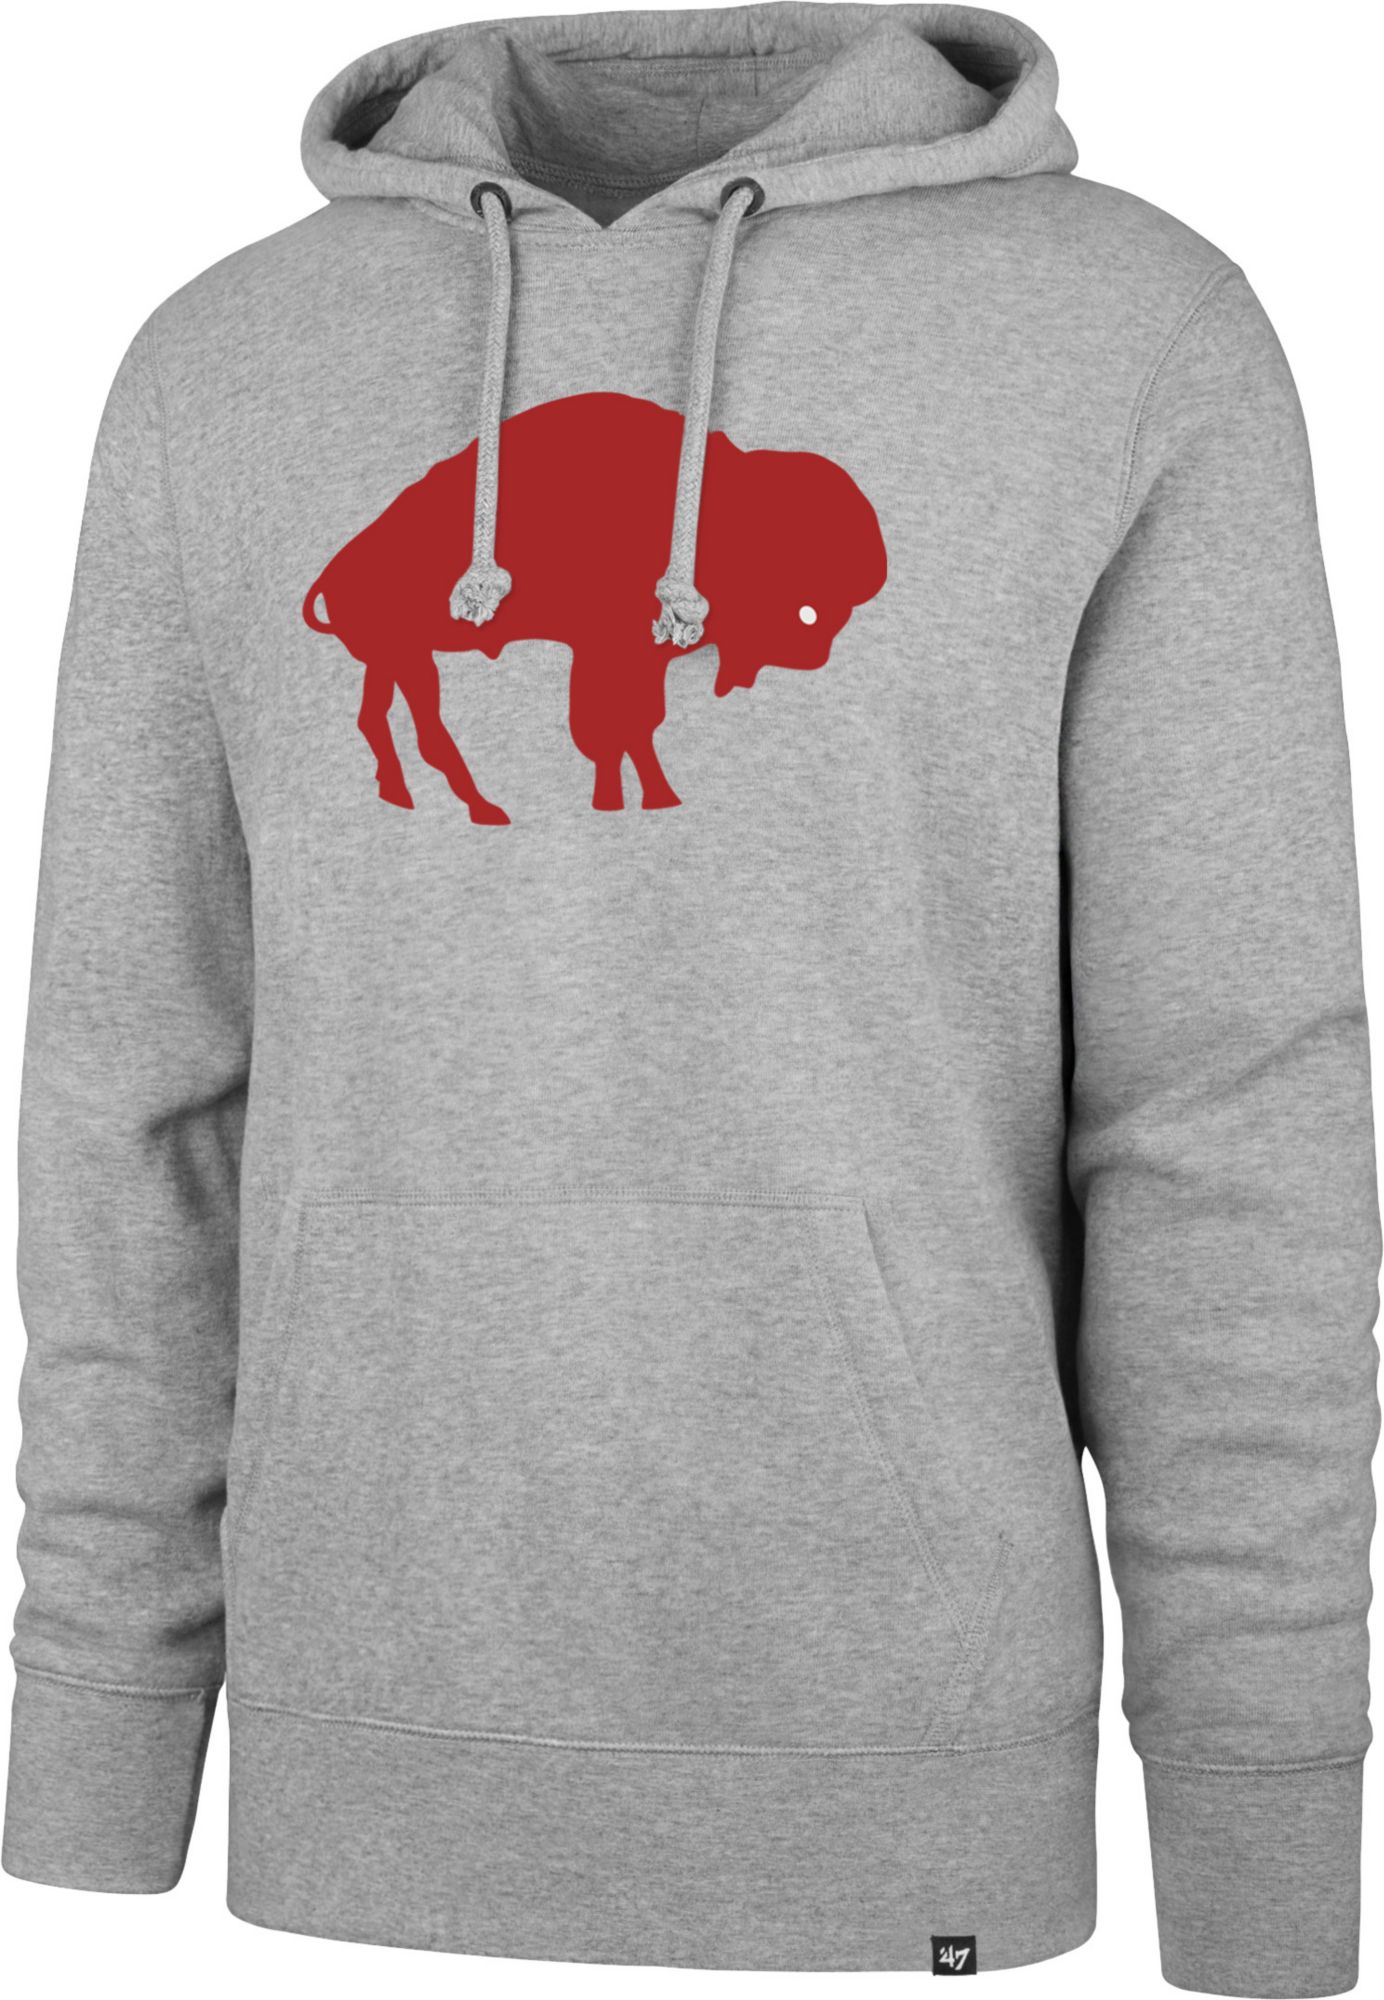 vintage buffalo bills hoodie